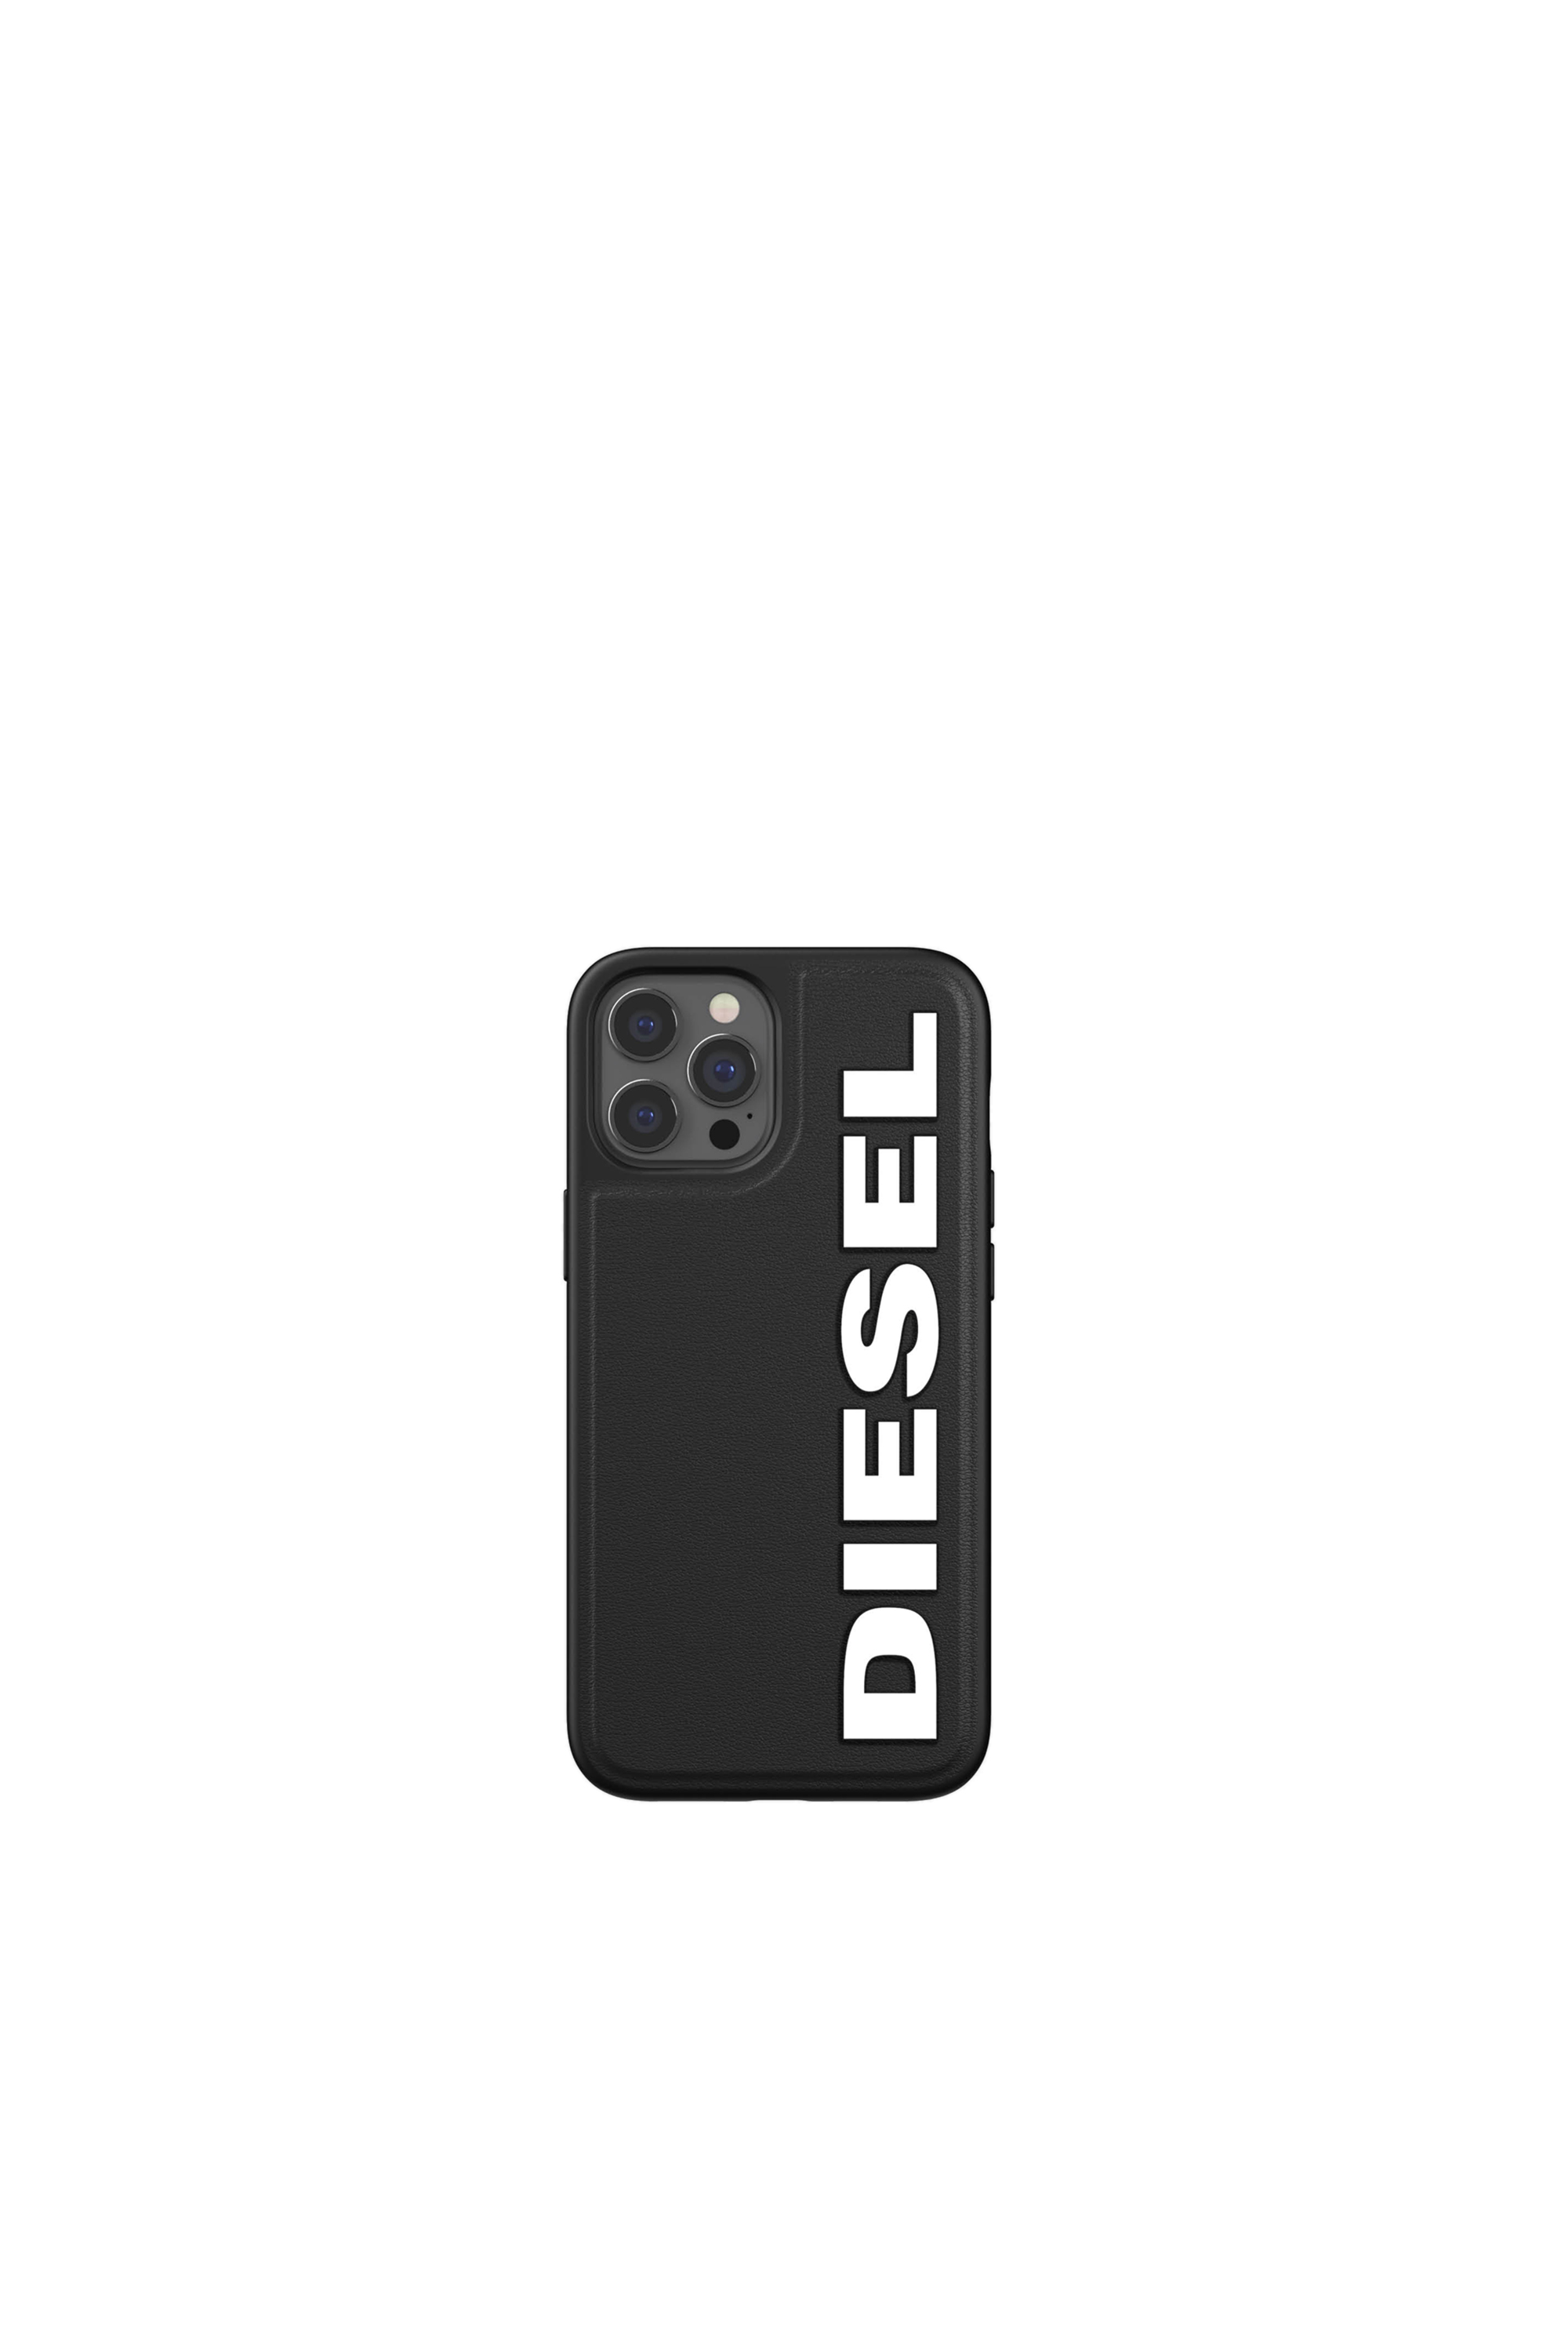 Diesel - 42493, Black - Image 2